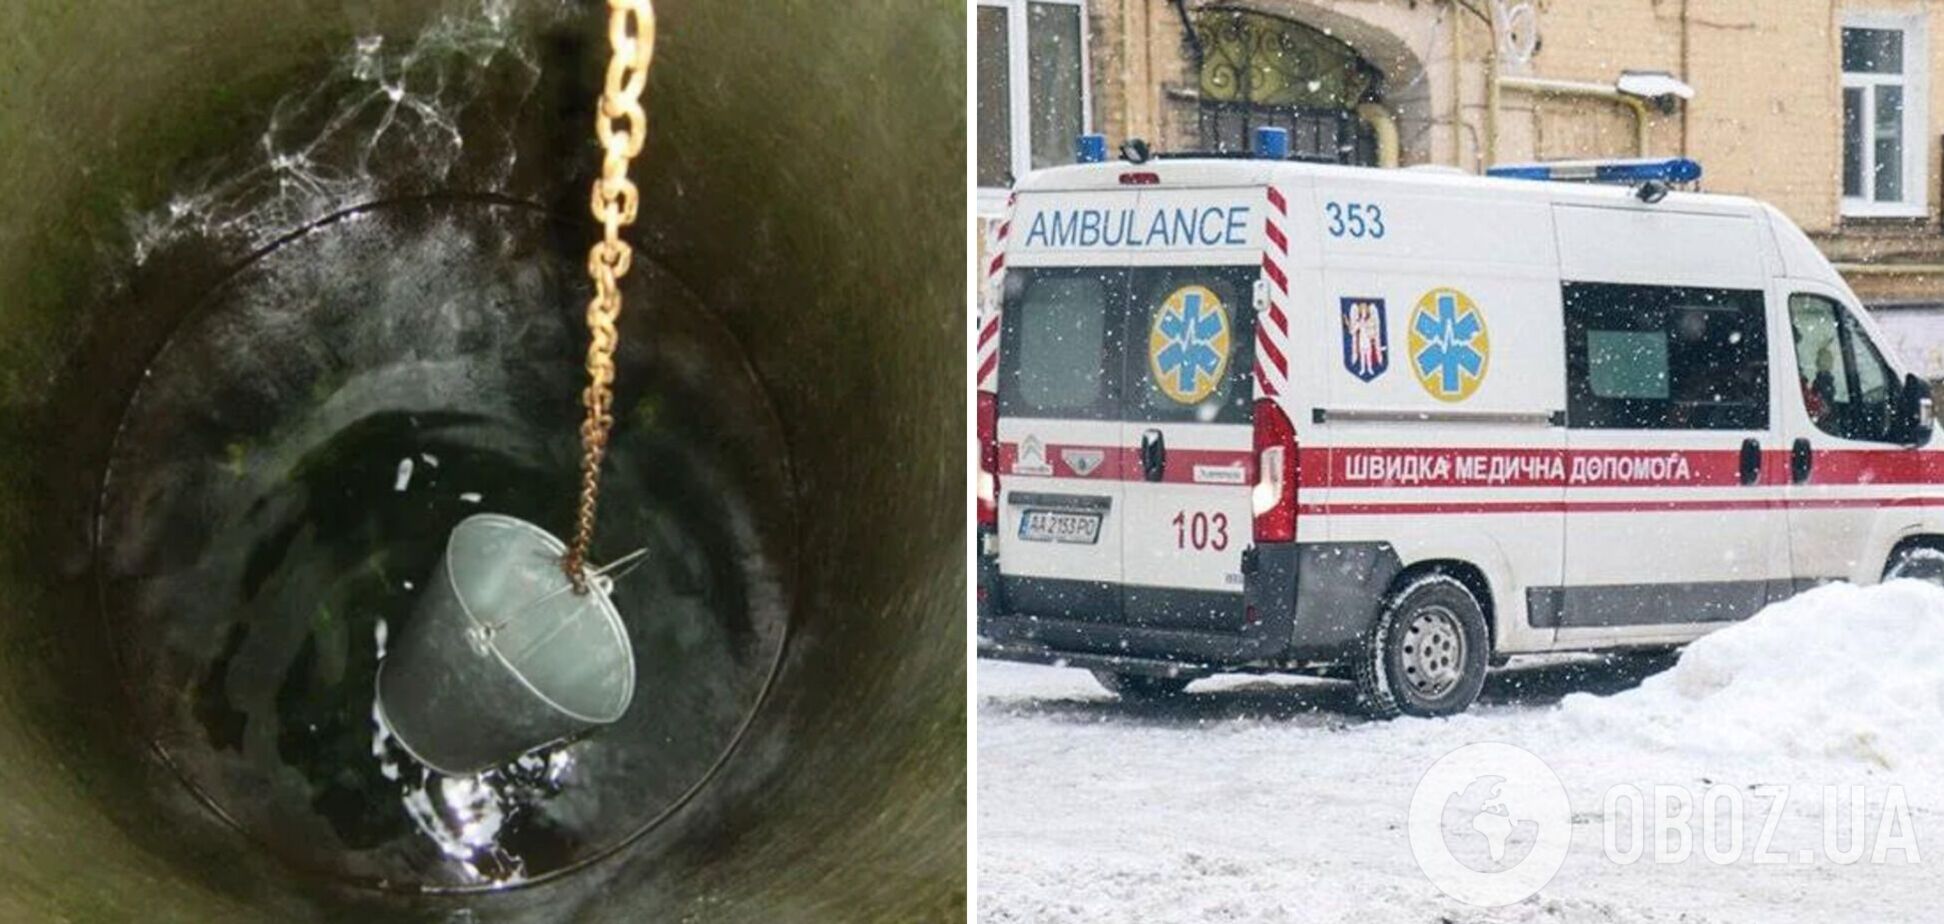 Хотів набрати води: на Одещині 12-річний хлопчик впав у криницю і загинув 